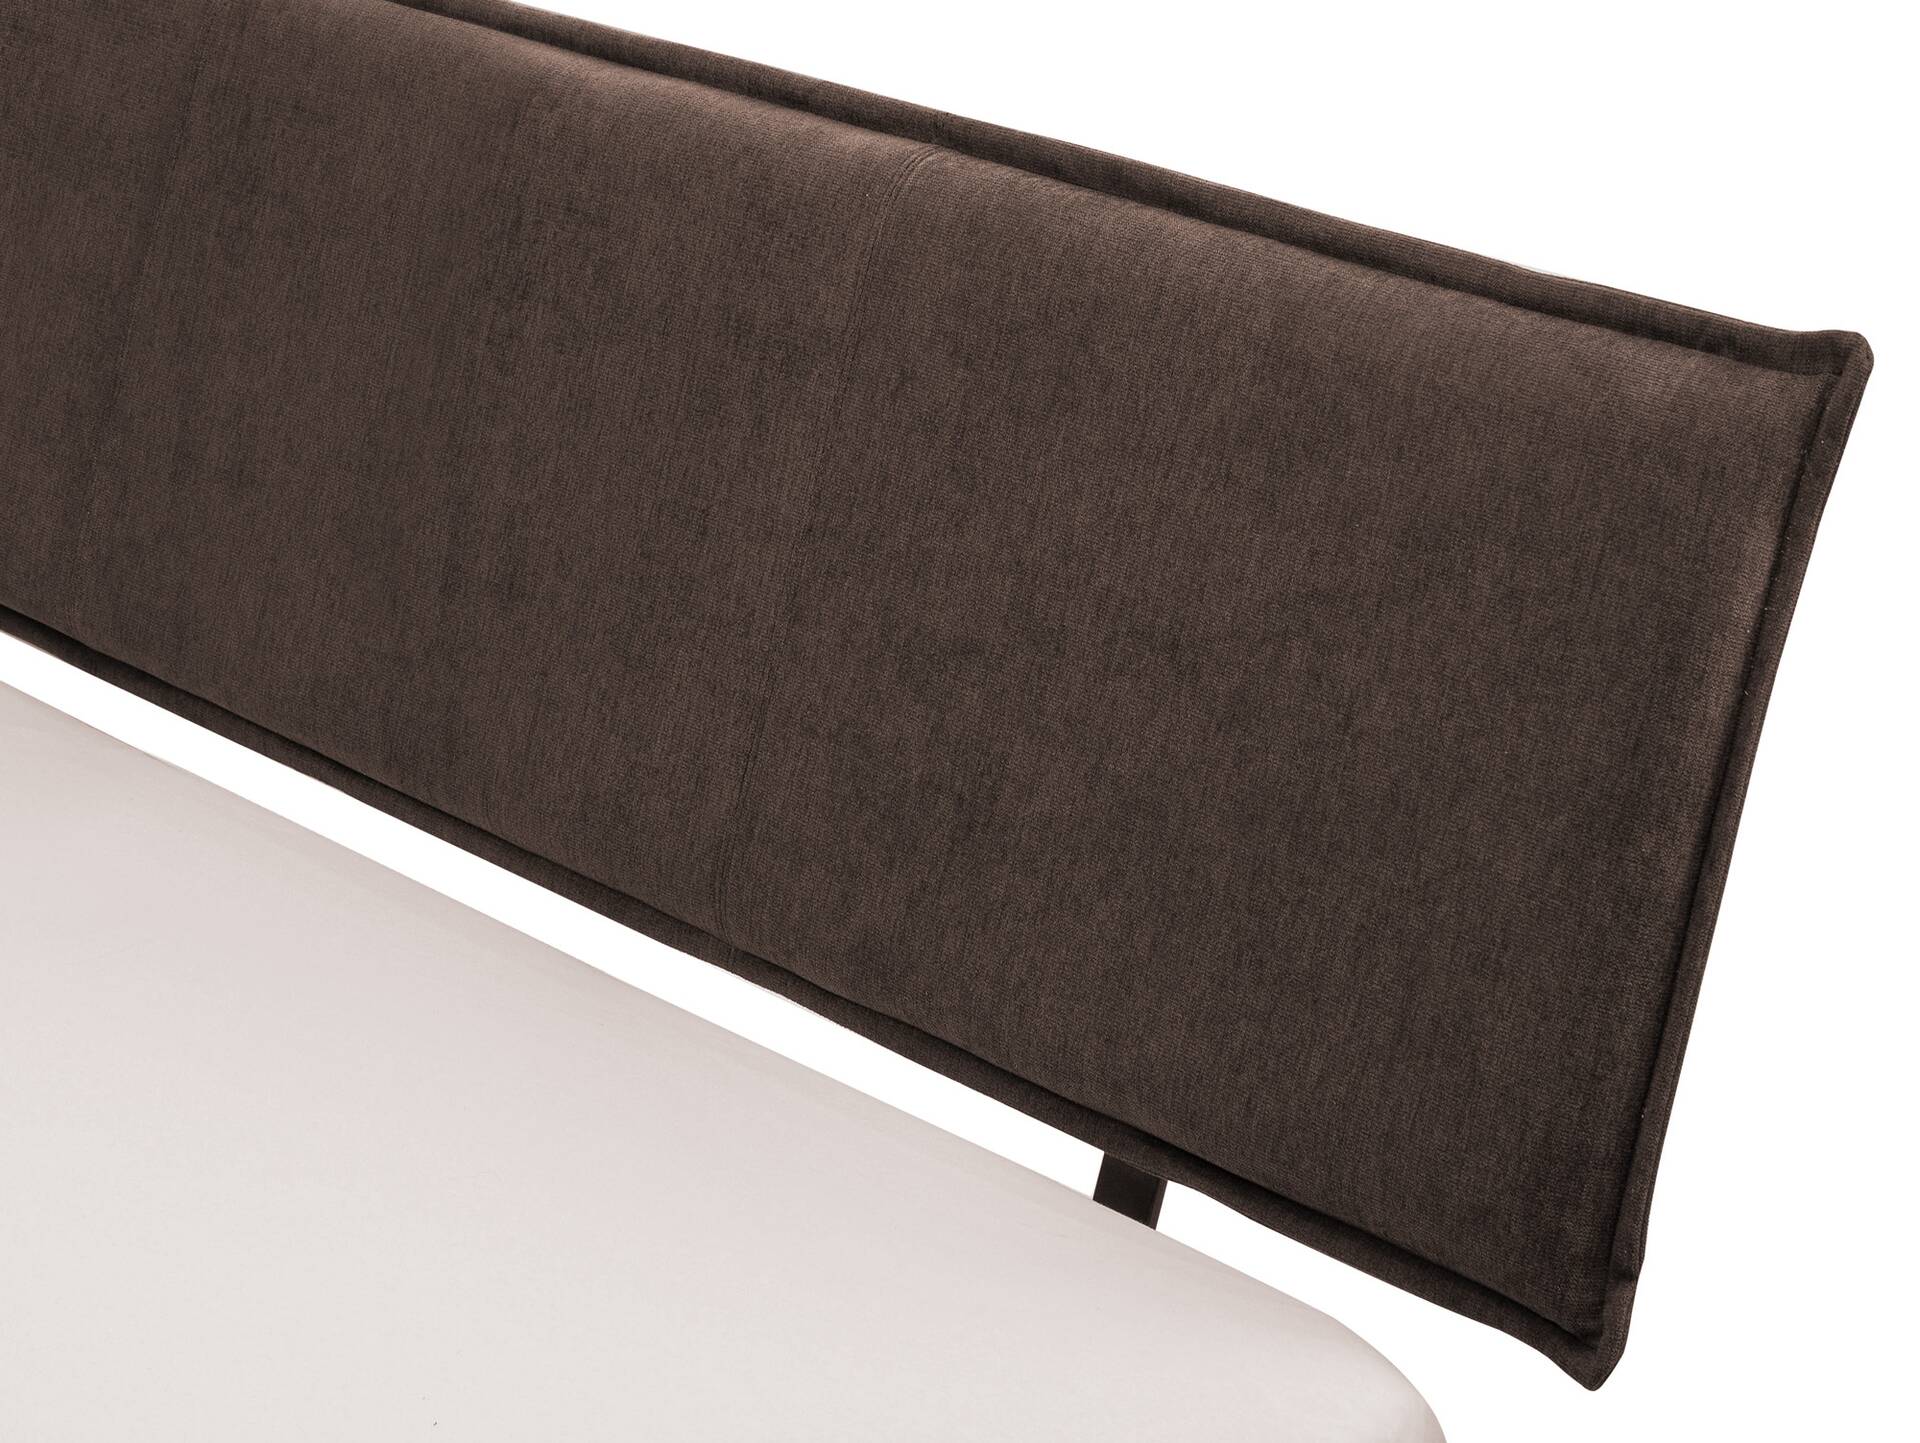 CORDINO 4-Fuß-Bett aus Eiche mit Polster-Kopfteil, Material Massivholz 120 x 200 cm | Eiche lackiert | Stoff Braun | gebürstet